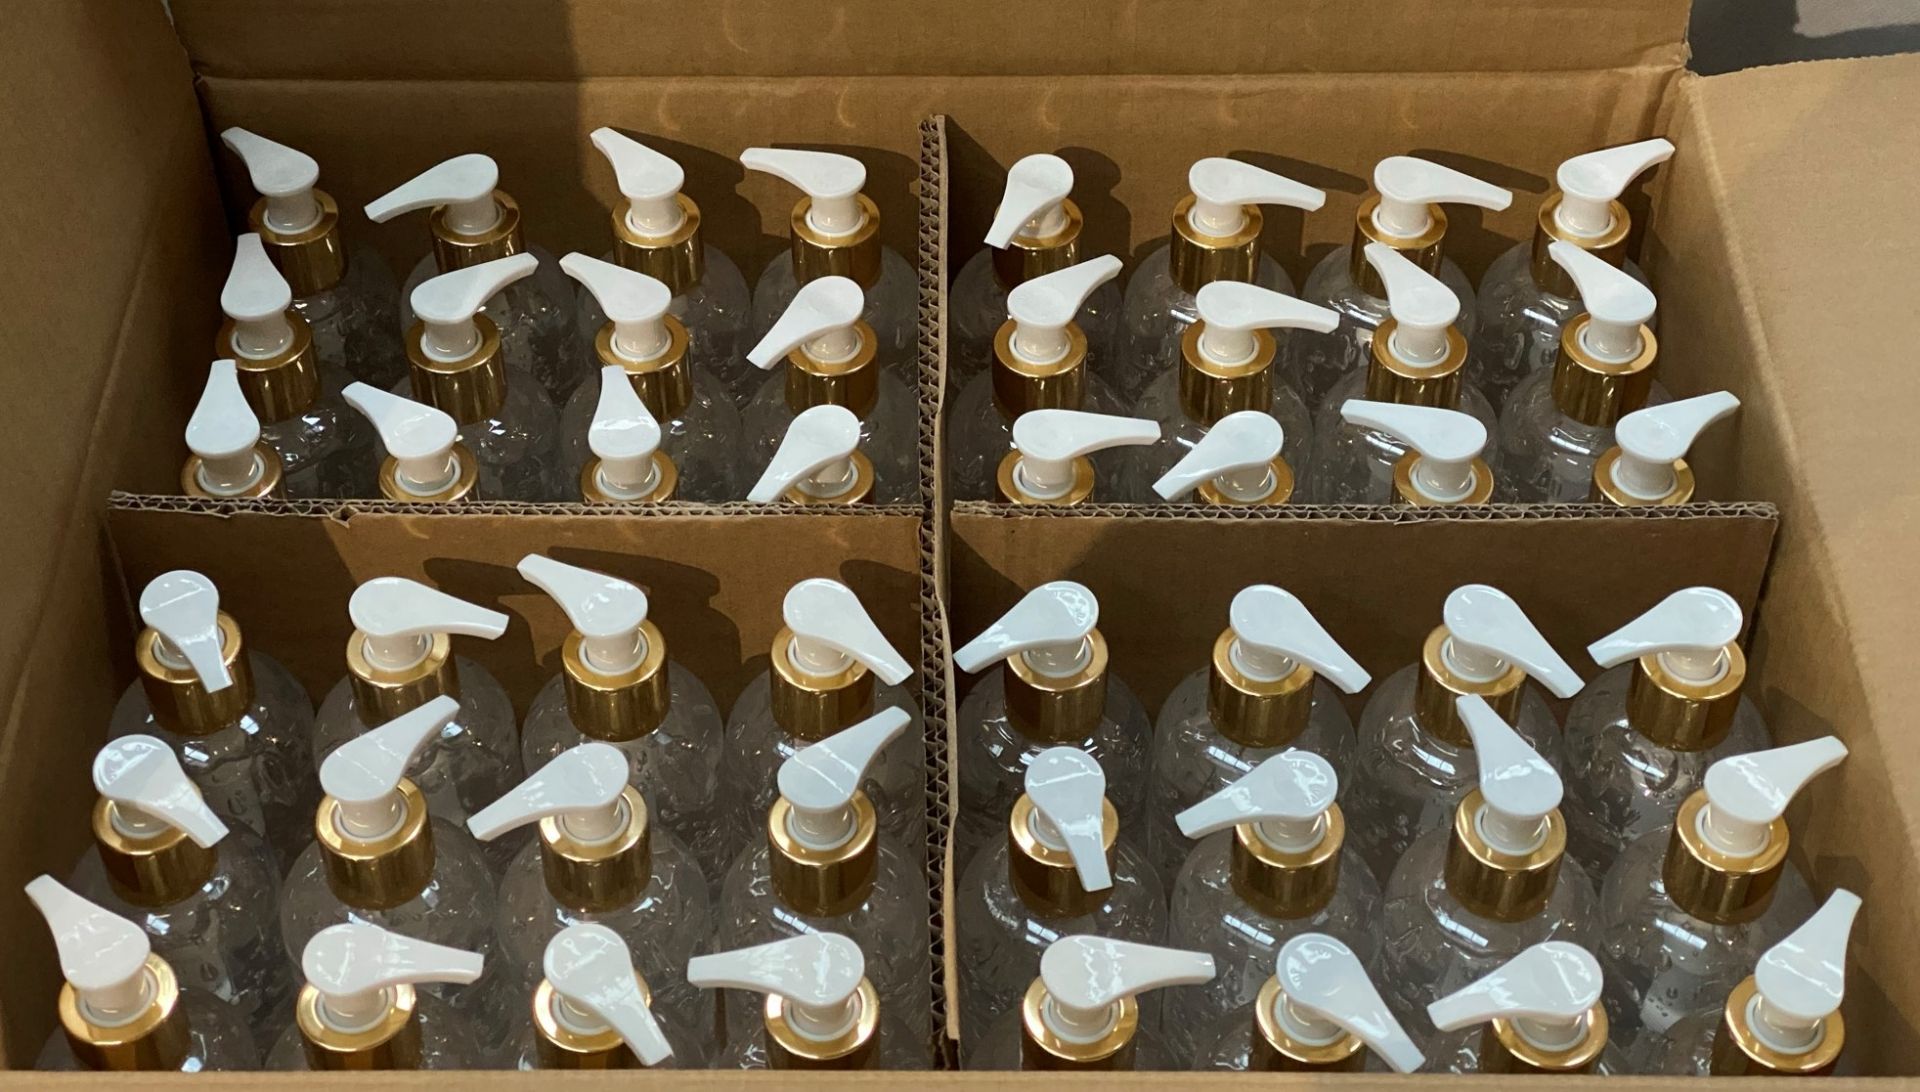 192 x 200ml pump top bottles of Rosdon Group UK hand sanitiser (Unlabelled clear plastic bottles) - - Image 2 of 5